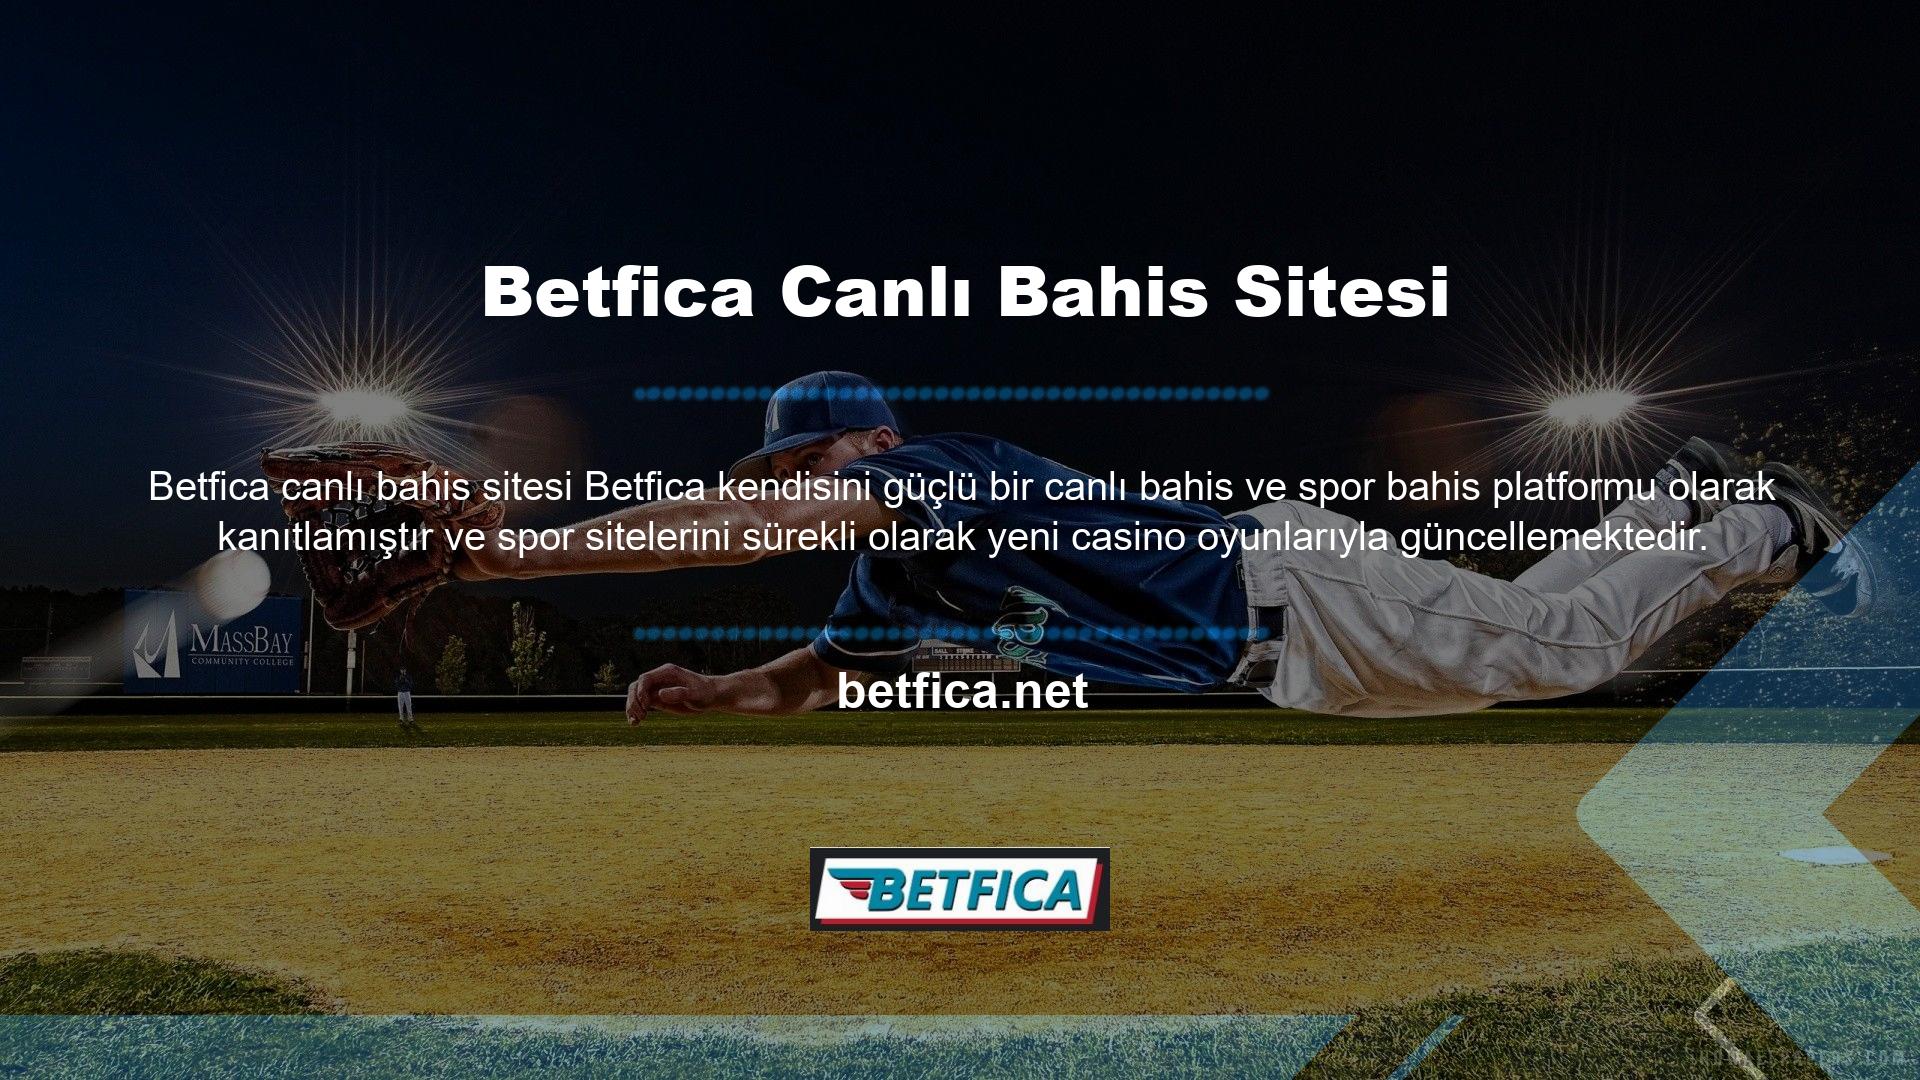 Betfica, yenilikçi ve ilerici bahis seçenekleri sunan bir bahis sitesi olarak kullanıcılarının güvenini kazanmıştır